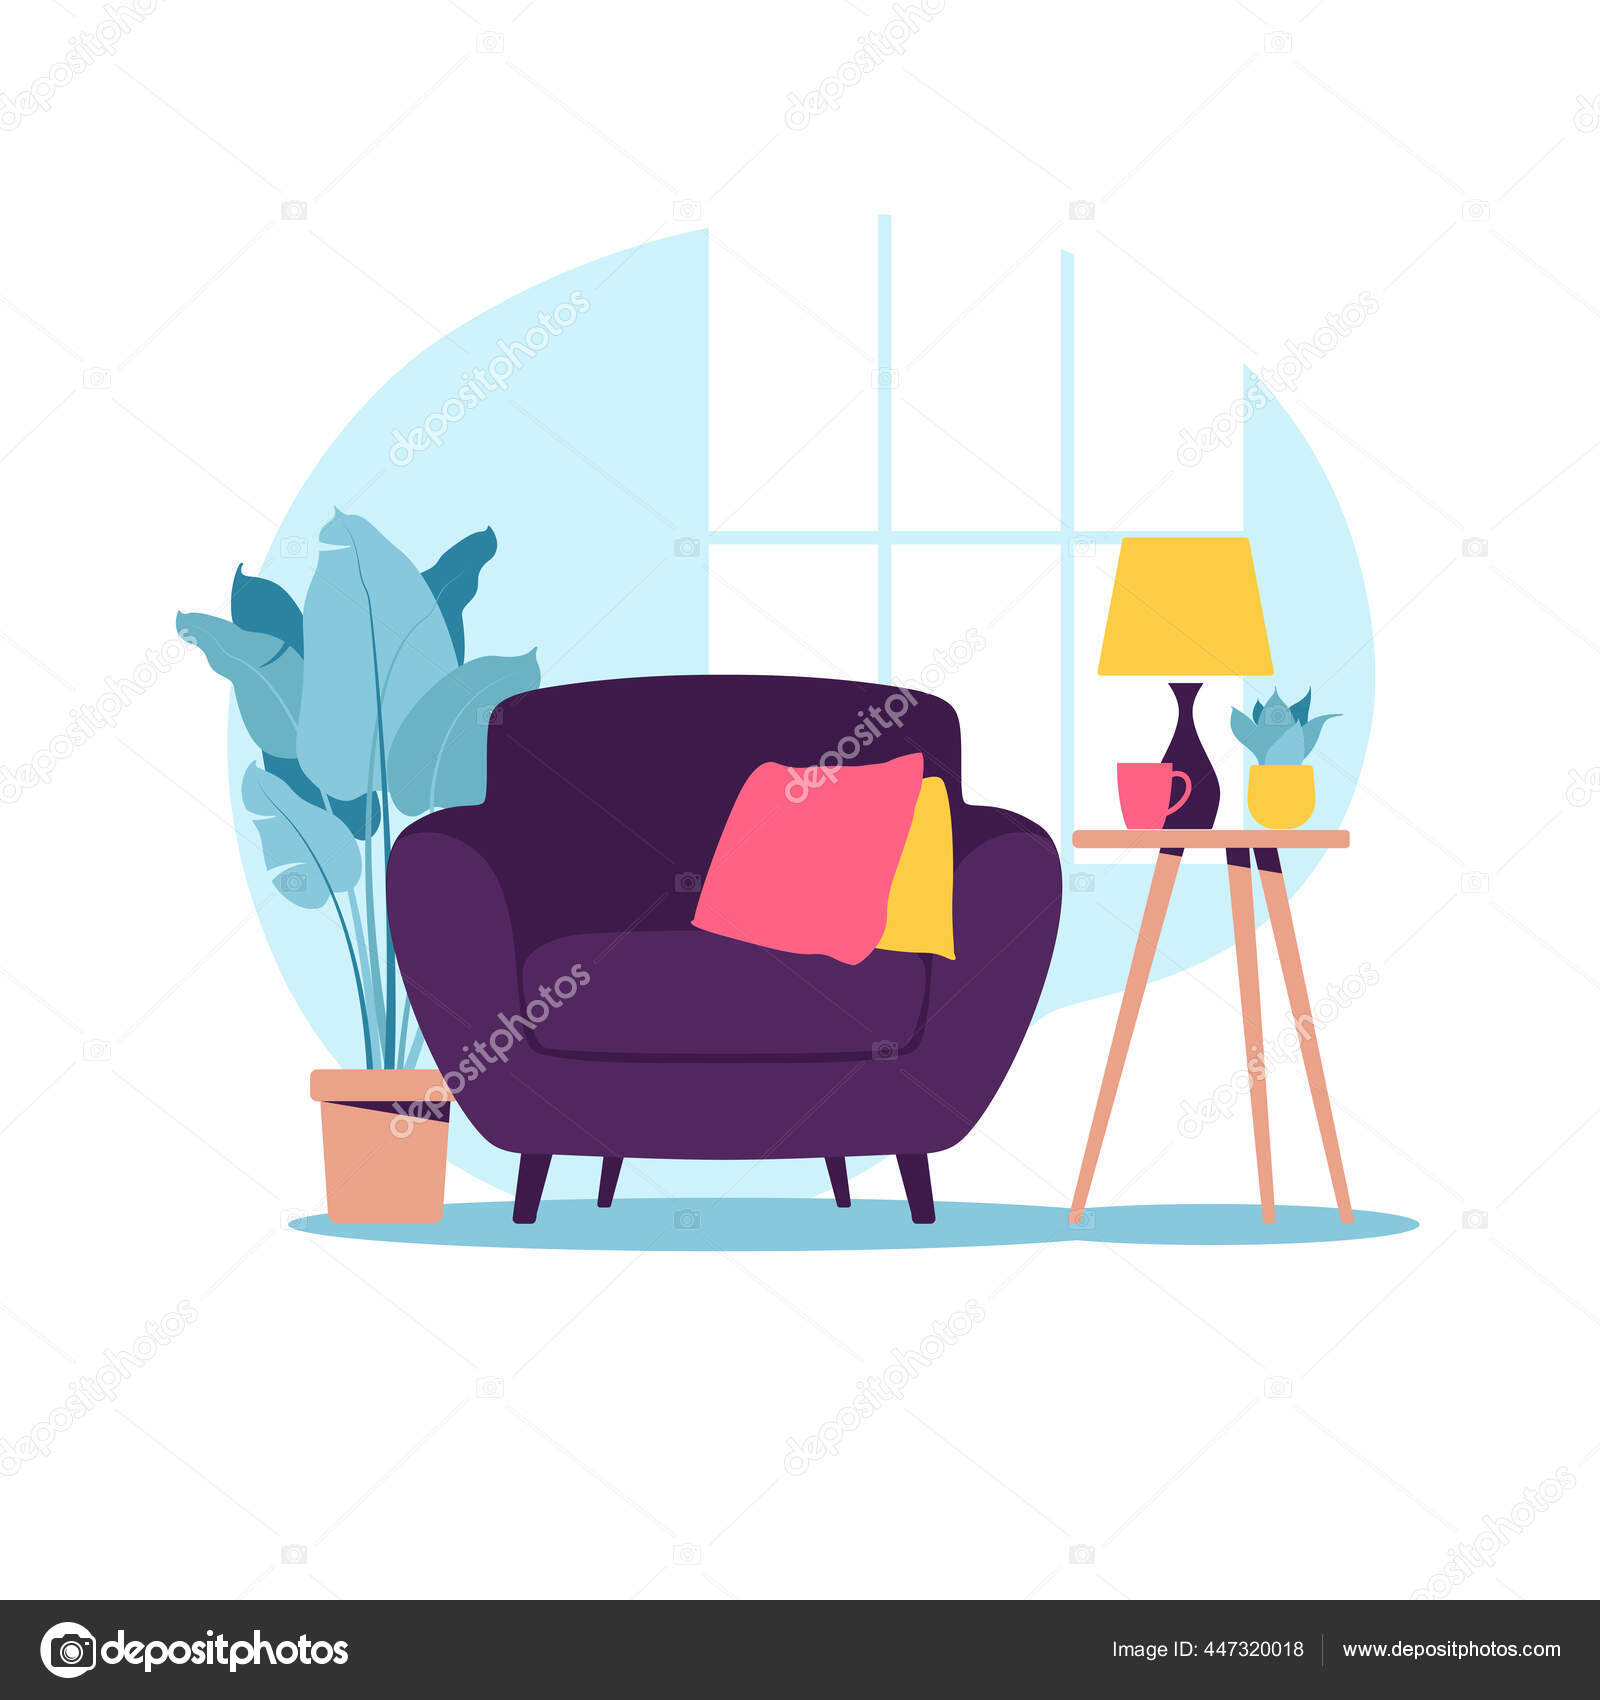 Kursi Berlengan Modern Dengan Meja Mini Interior Ruang Tamu Dengan Furnitur Gaya Kartun Yang Datar Ilustrasi Vektor Stok Vektor Elena Kalinicheva 447320018